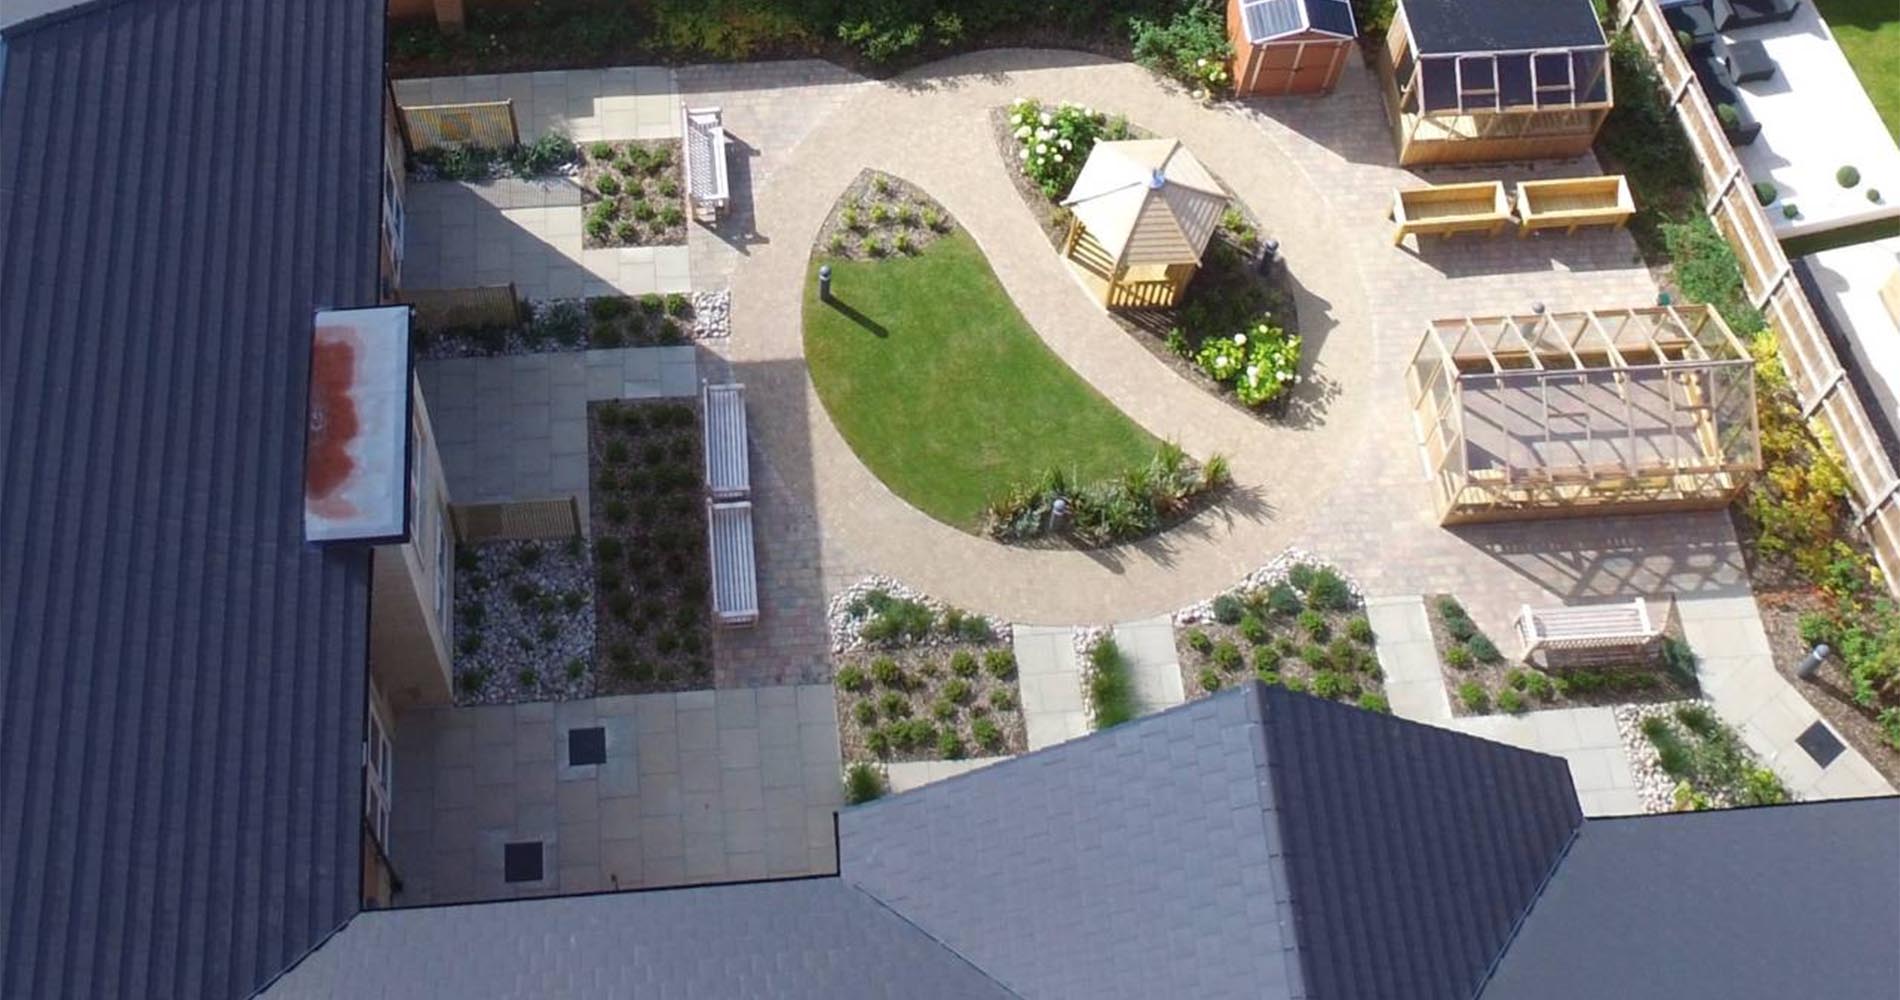 Avonmere Care Home garden